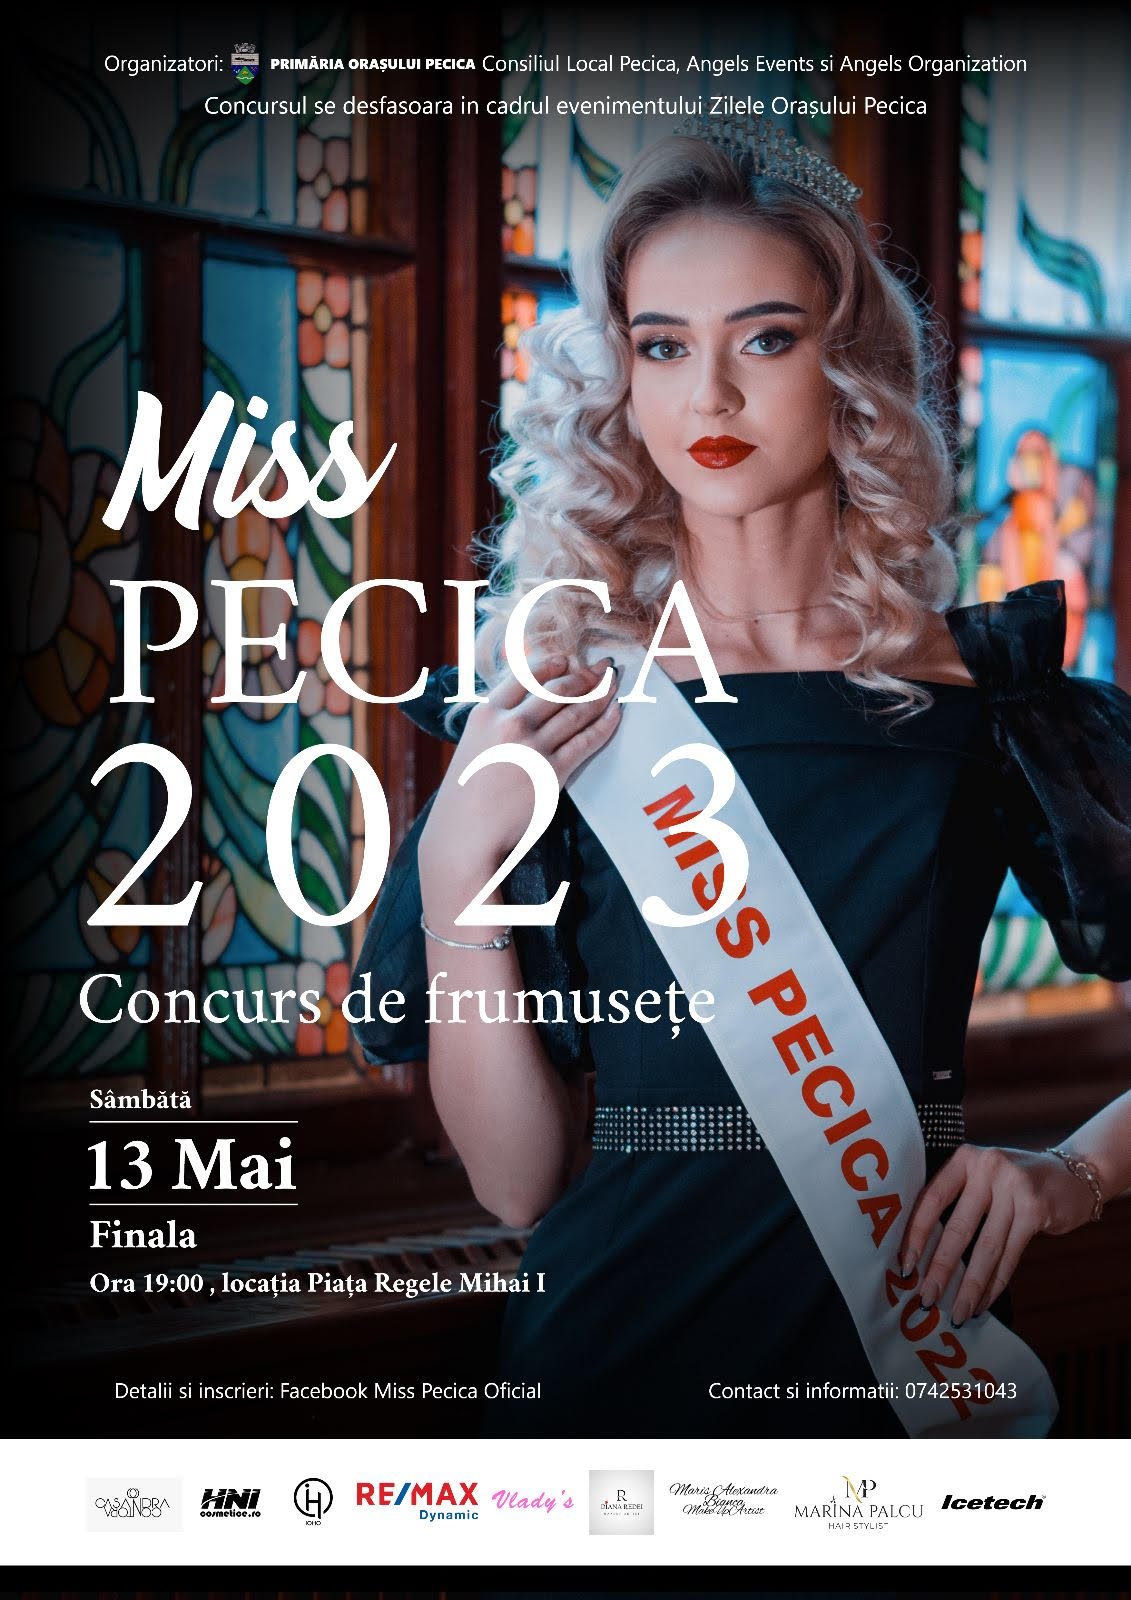 Miss Pecica 2023